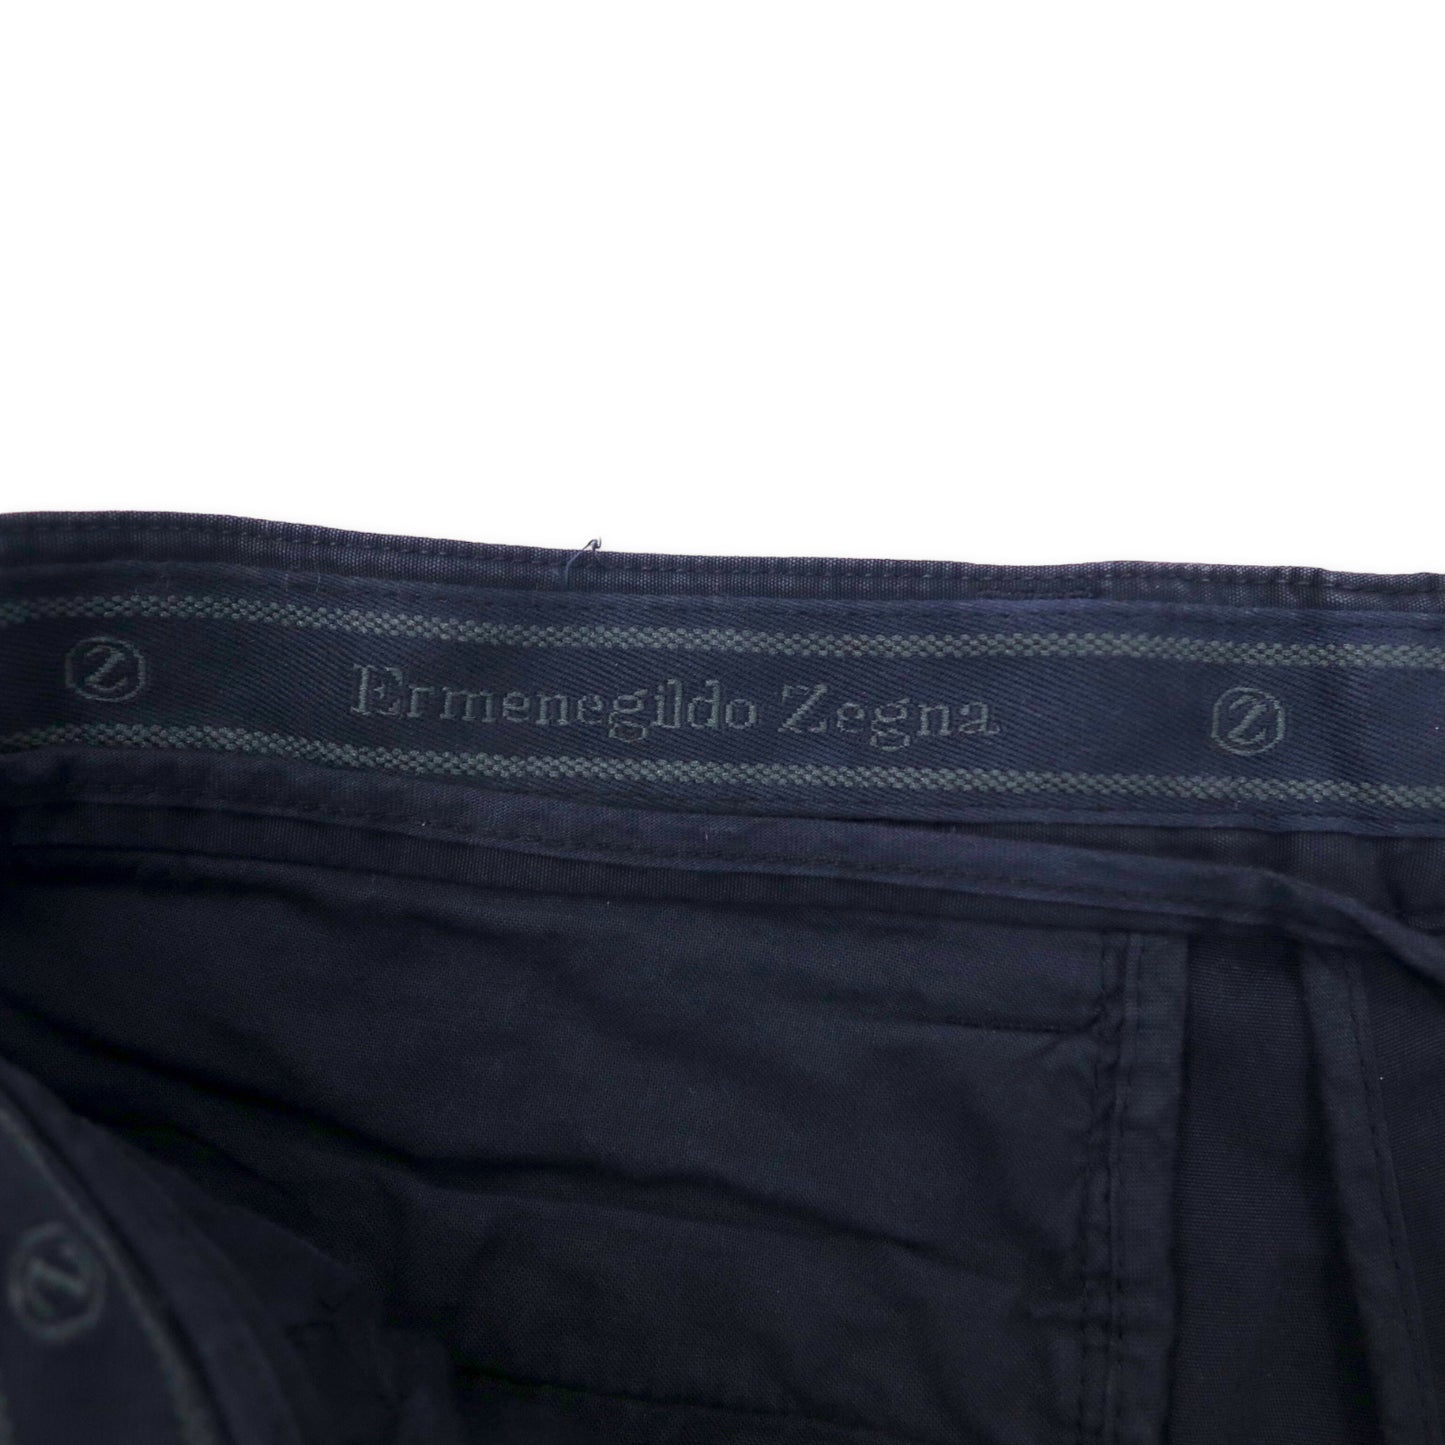 Ermenegildo Zegna イタリア製 2タック チノ ショートパンツ 46 ブラック コットン